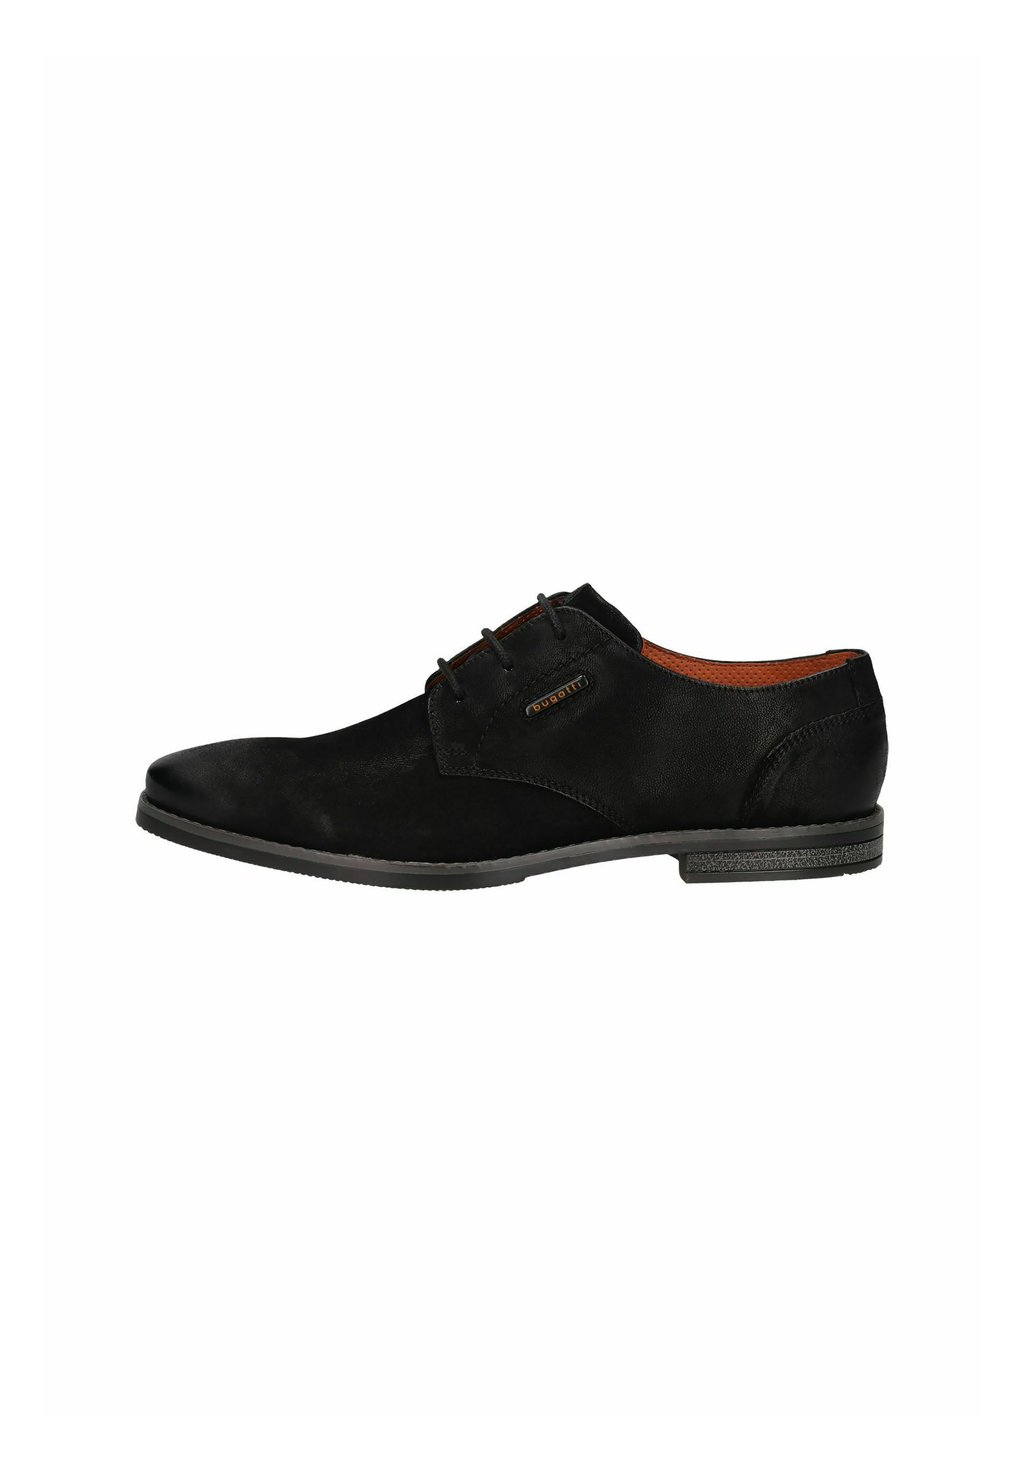 Деловые туфли на шнуровке MENELLO bugatti, цвет schwarz деловые туфли на шнуровке bugatti цвет black